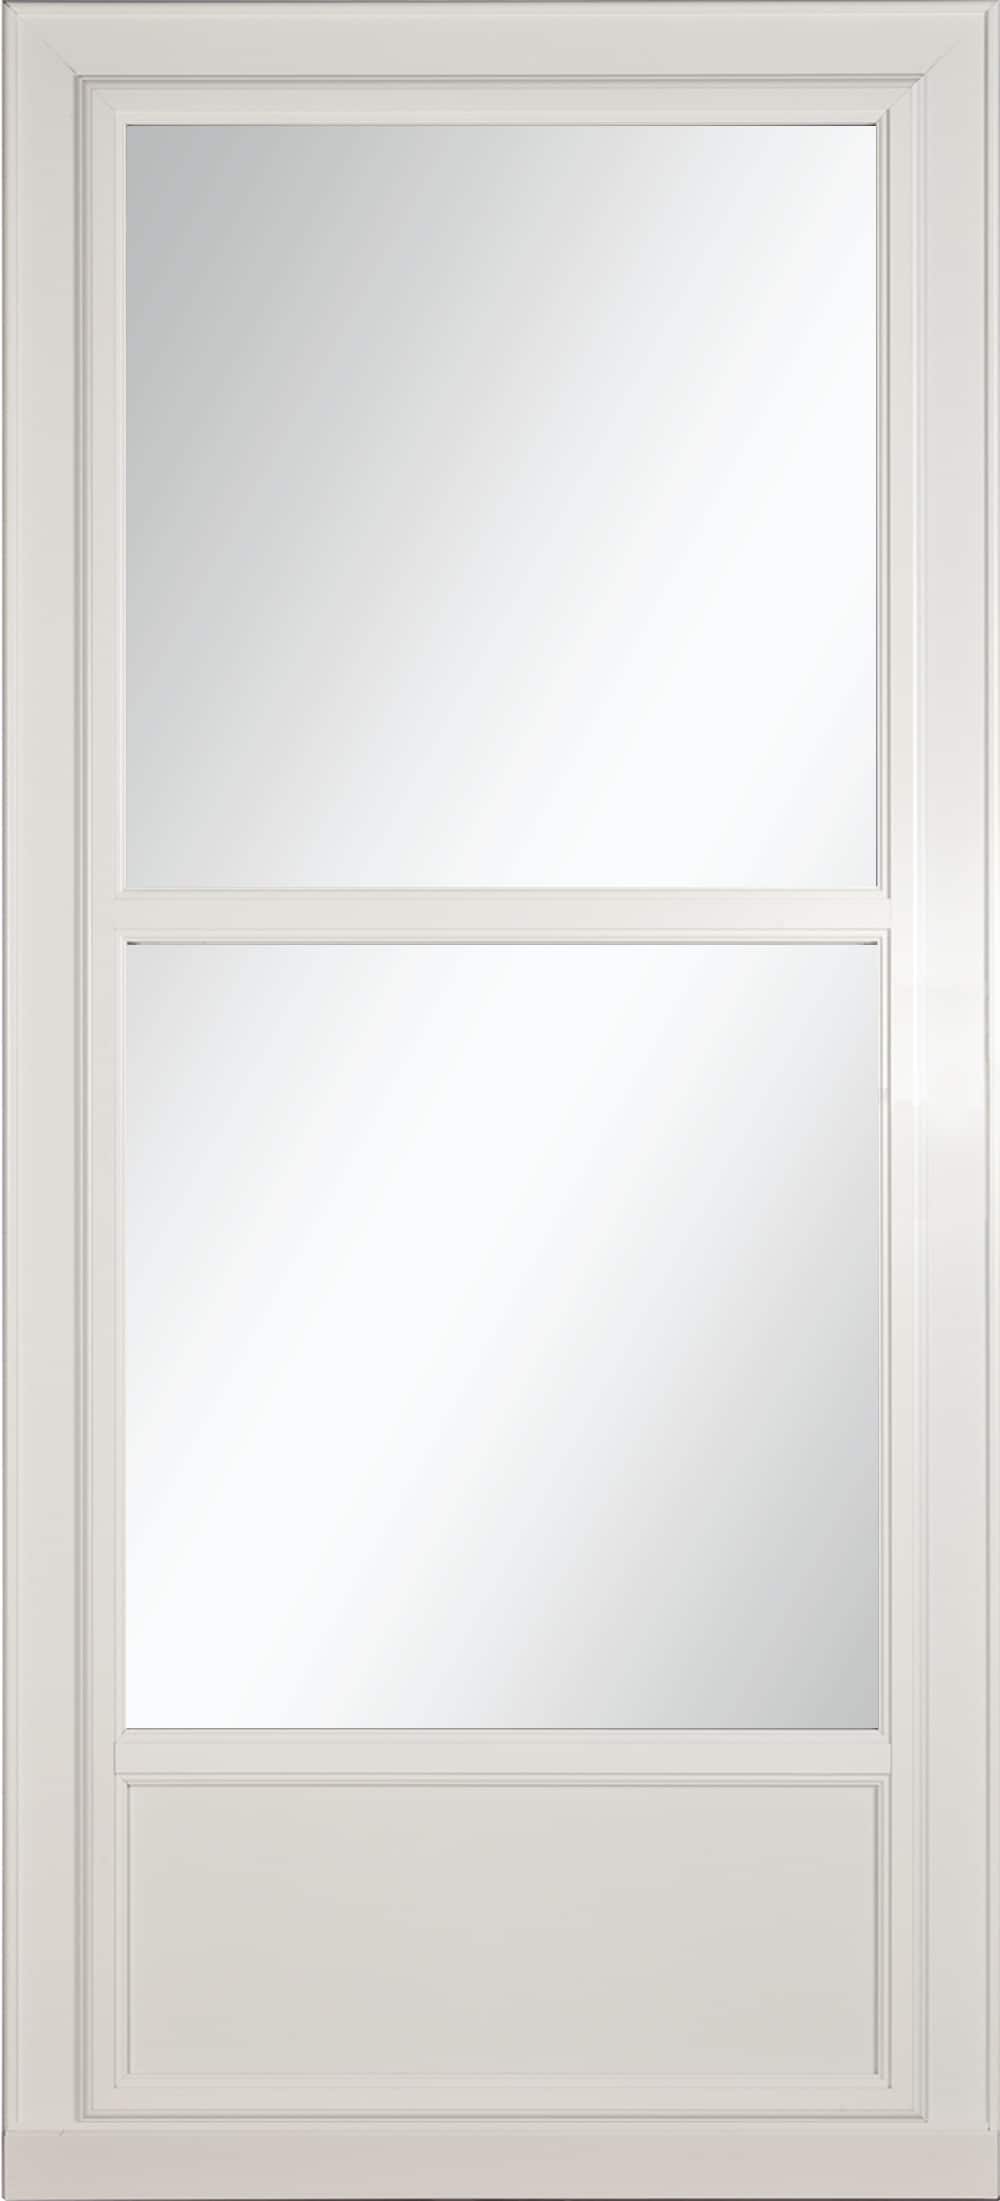 Tradewinds Selection 34-in x 81-in White Mid-view Retractable Screen Aluminum Storm Door | - LARSON 14606035